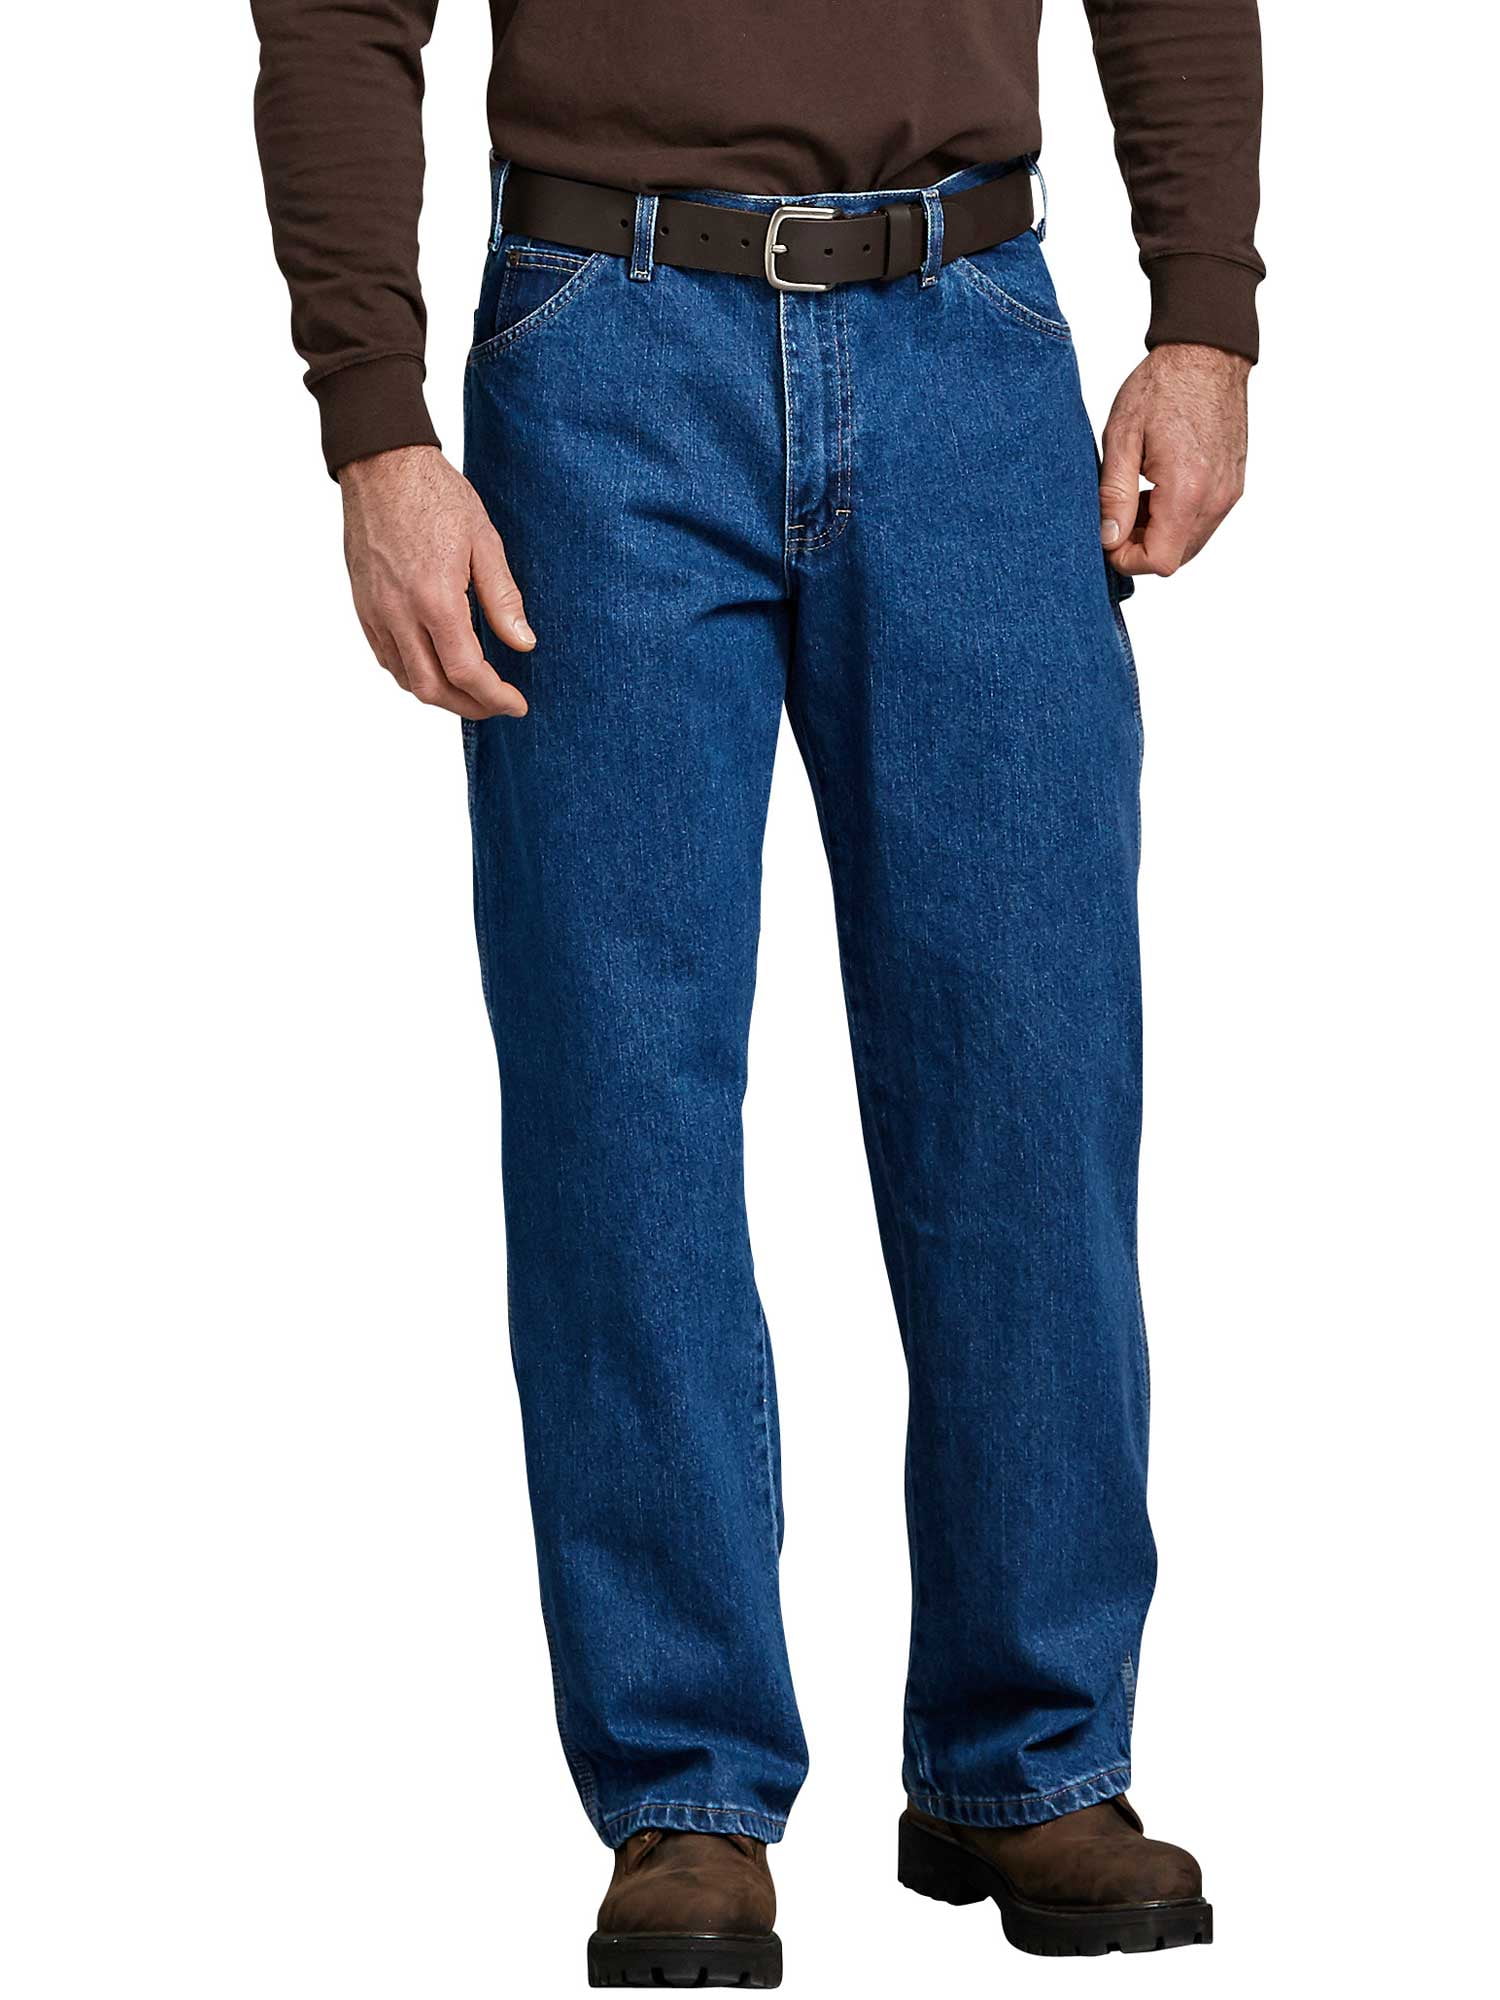 dickie jeans walmart